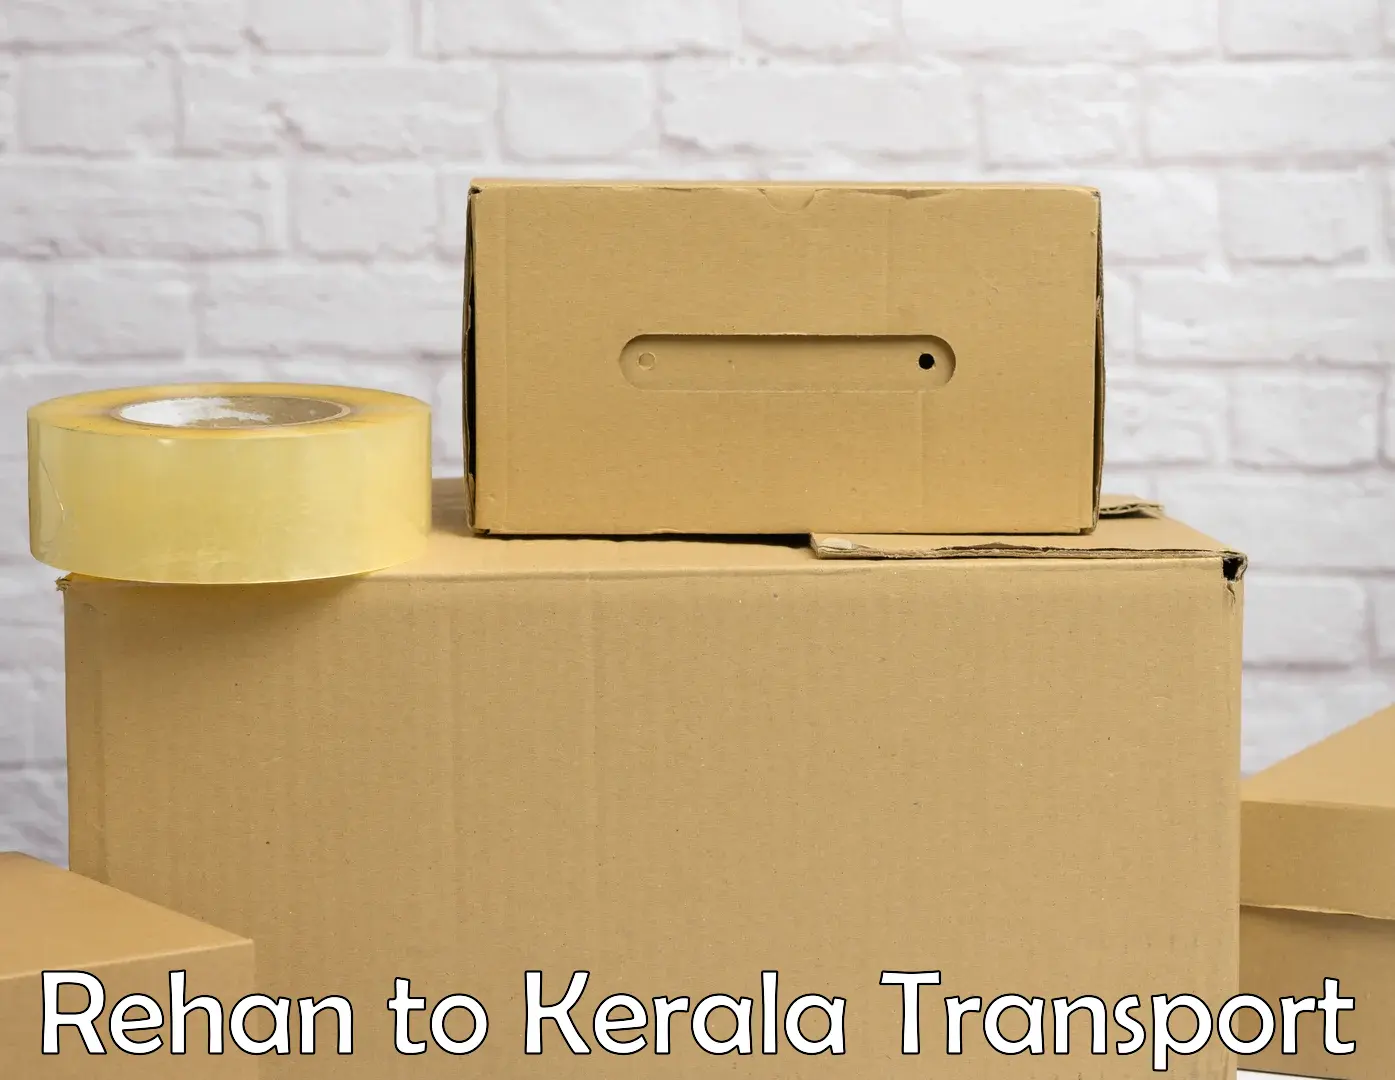 Bike shipping service Rehan to Kerala